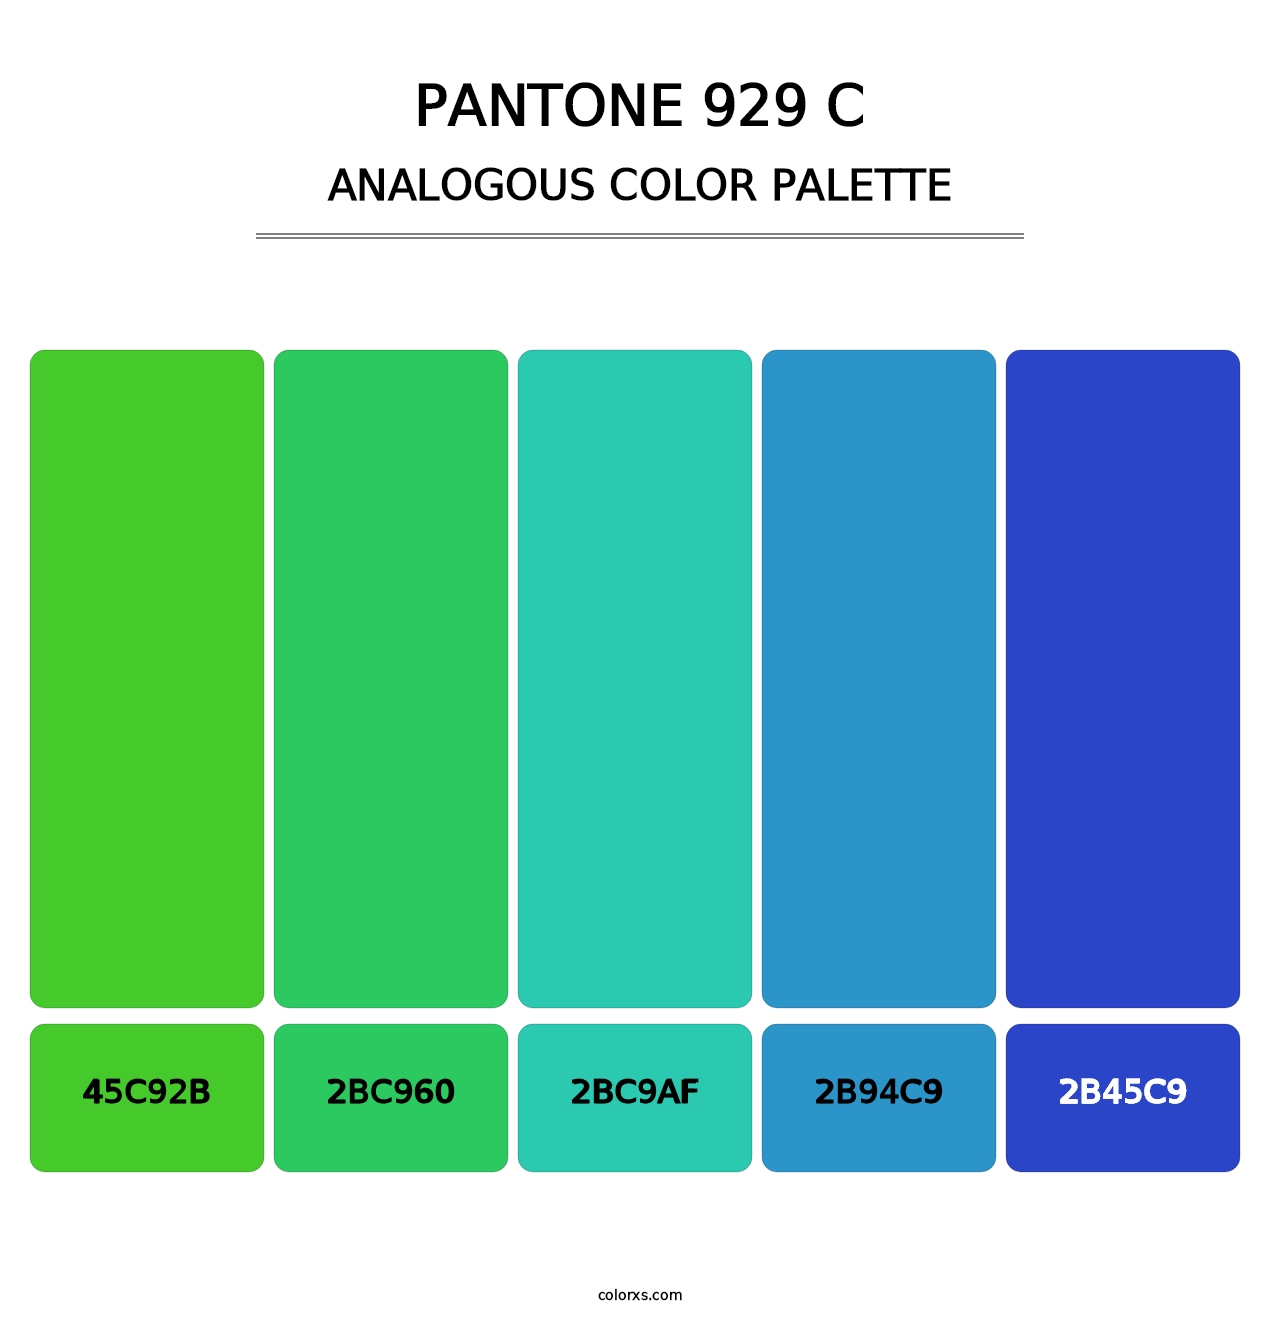 PANTONE 929 C - Analogous Color Palette